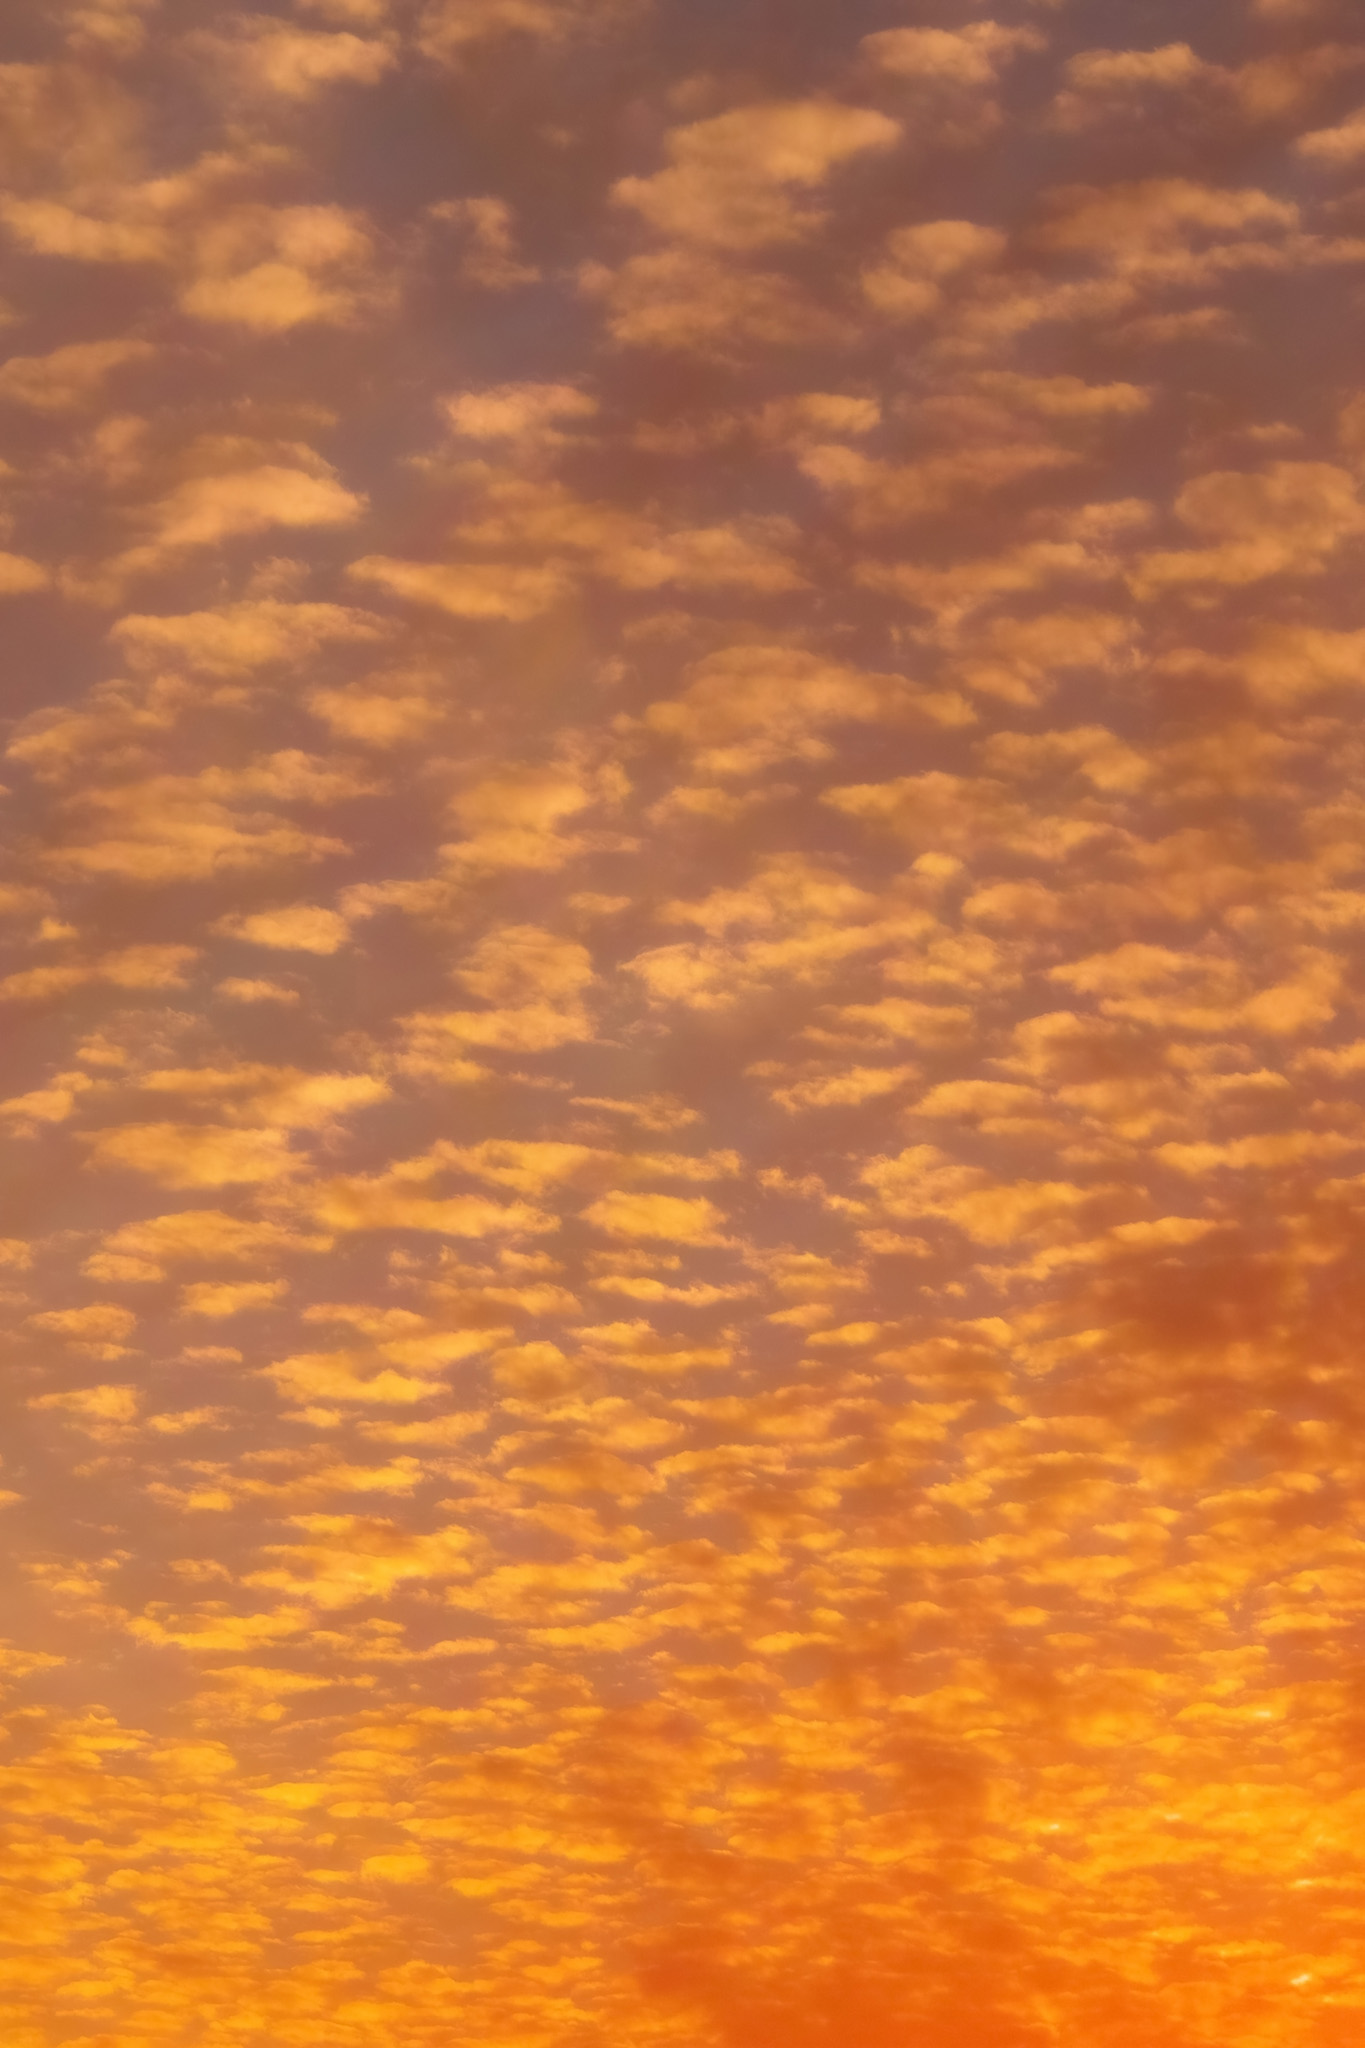 オレンジ色の雲が夕焼けに広がる の画像素材を無料ダウンロード 1 フリー素材 Beiz Images